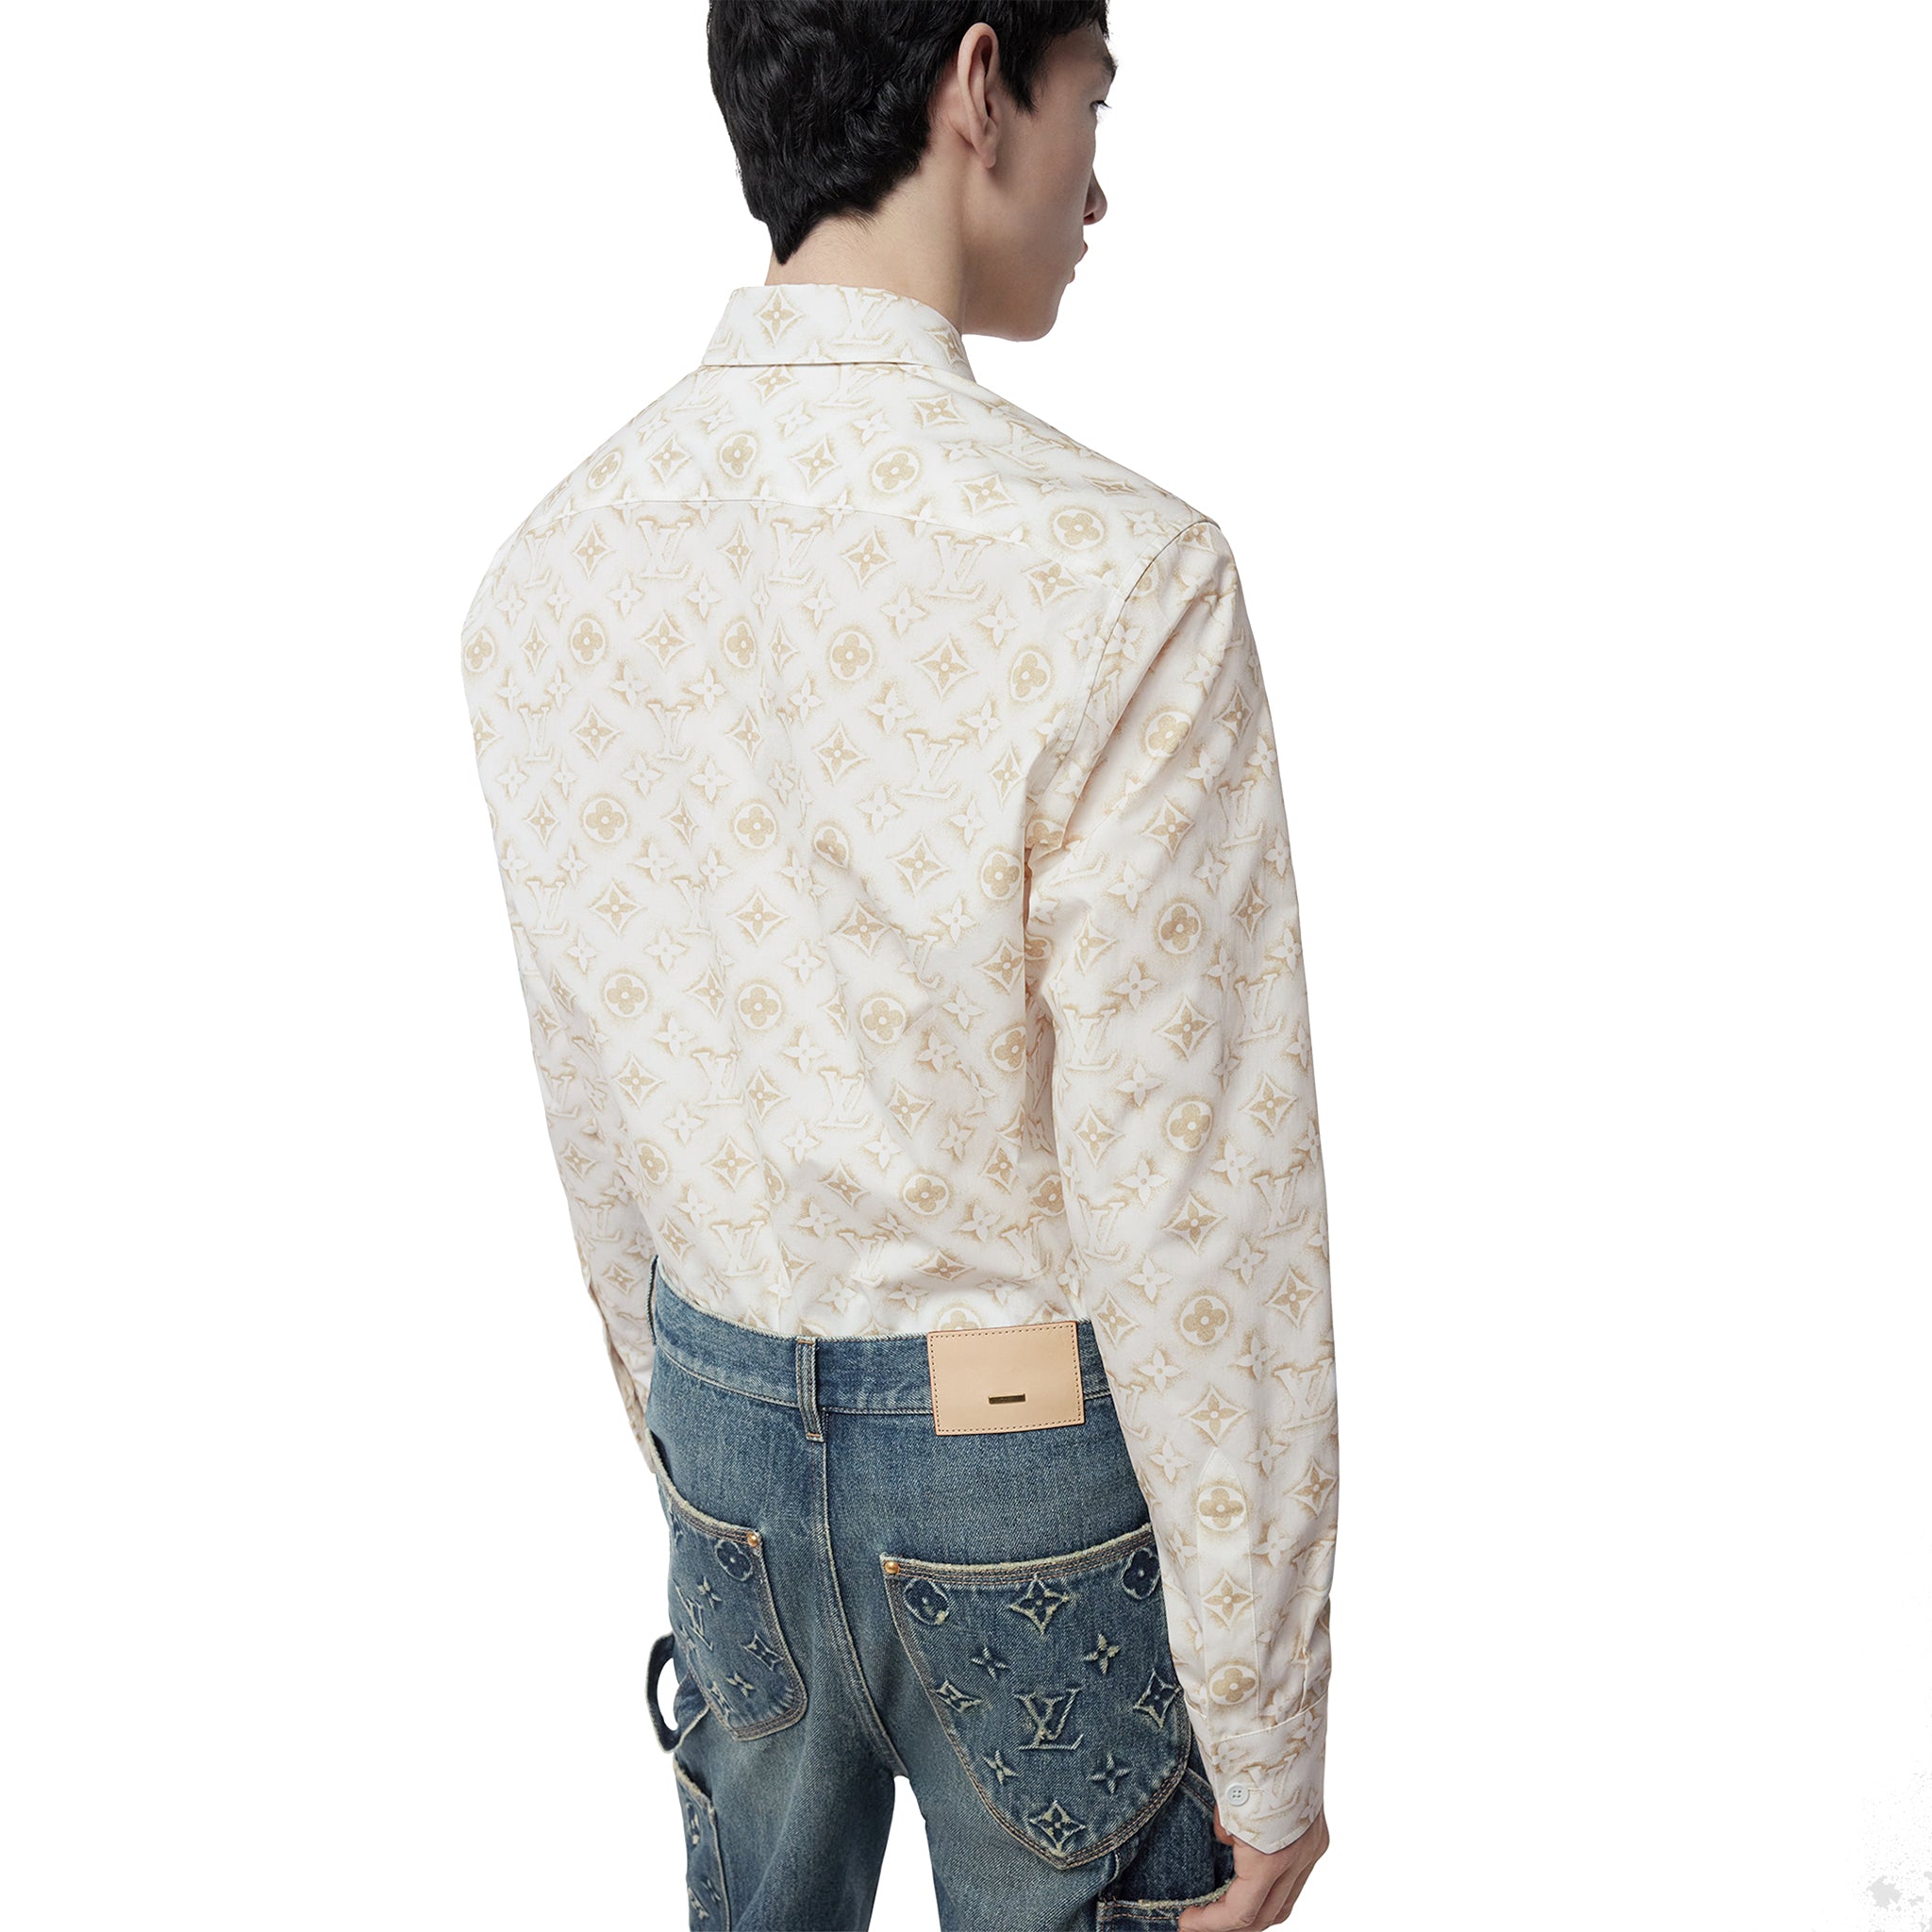 Back model view of Louis Vuitton Monogram Long-Sleeved Cotton Shirt White NVPROD4330266V